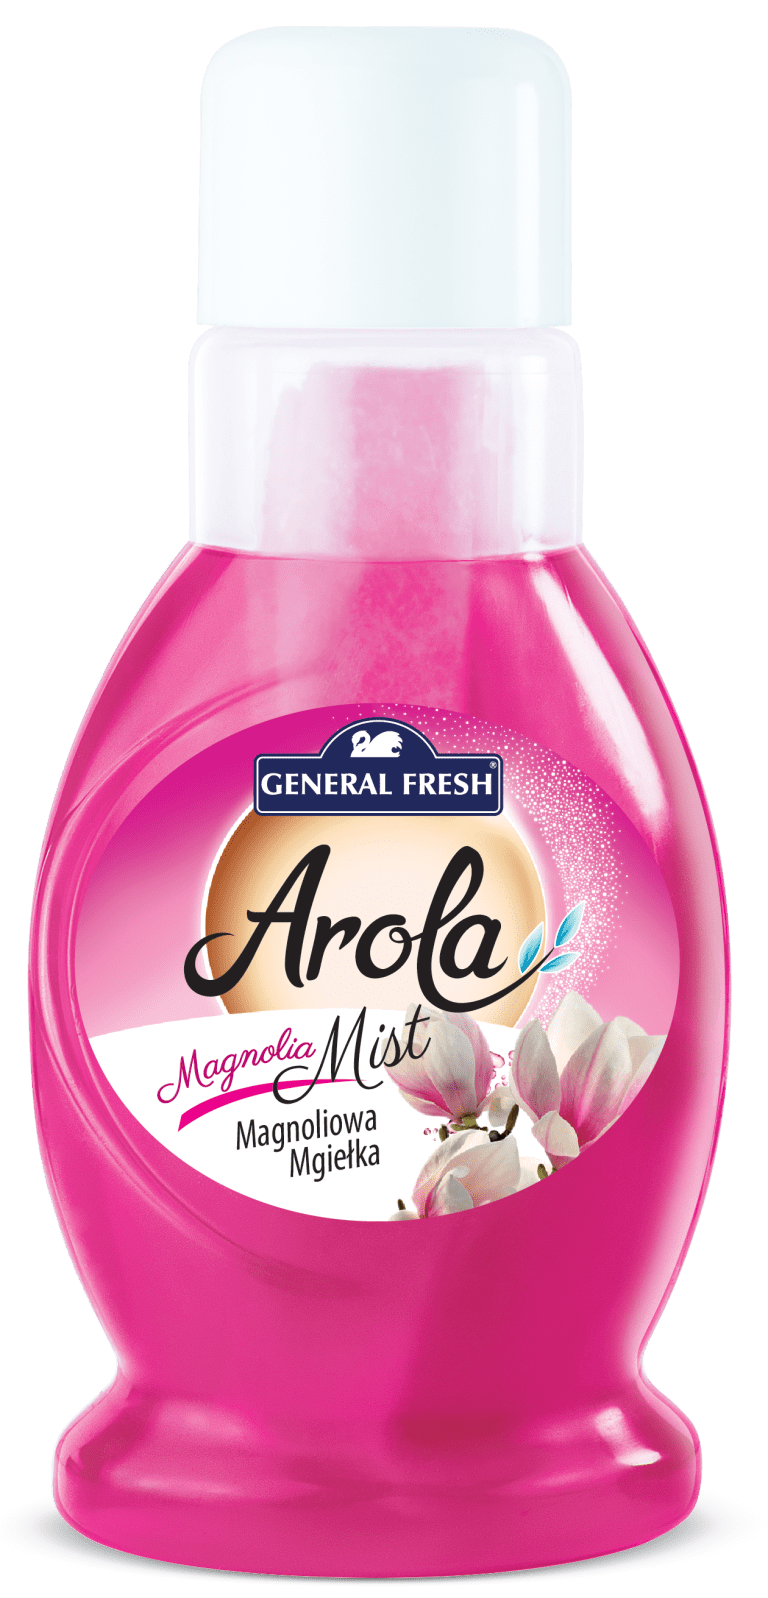 arola-mgielka-magnolia-kopia_6541